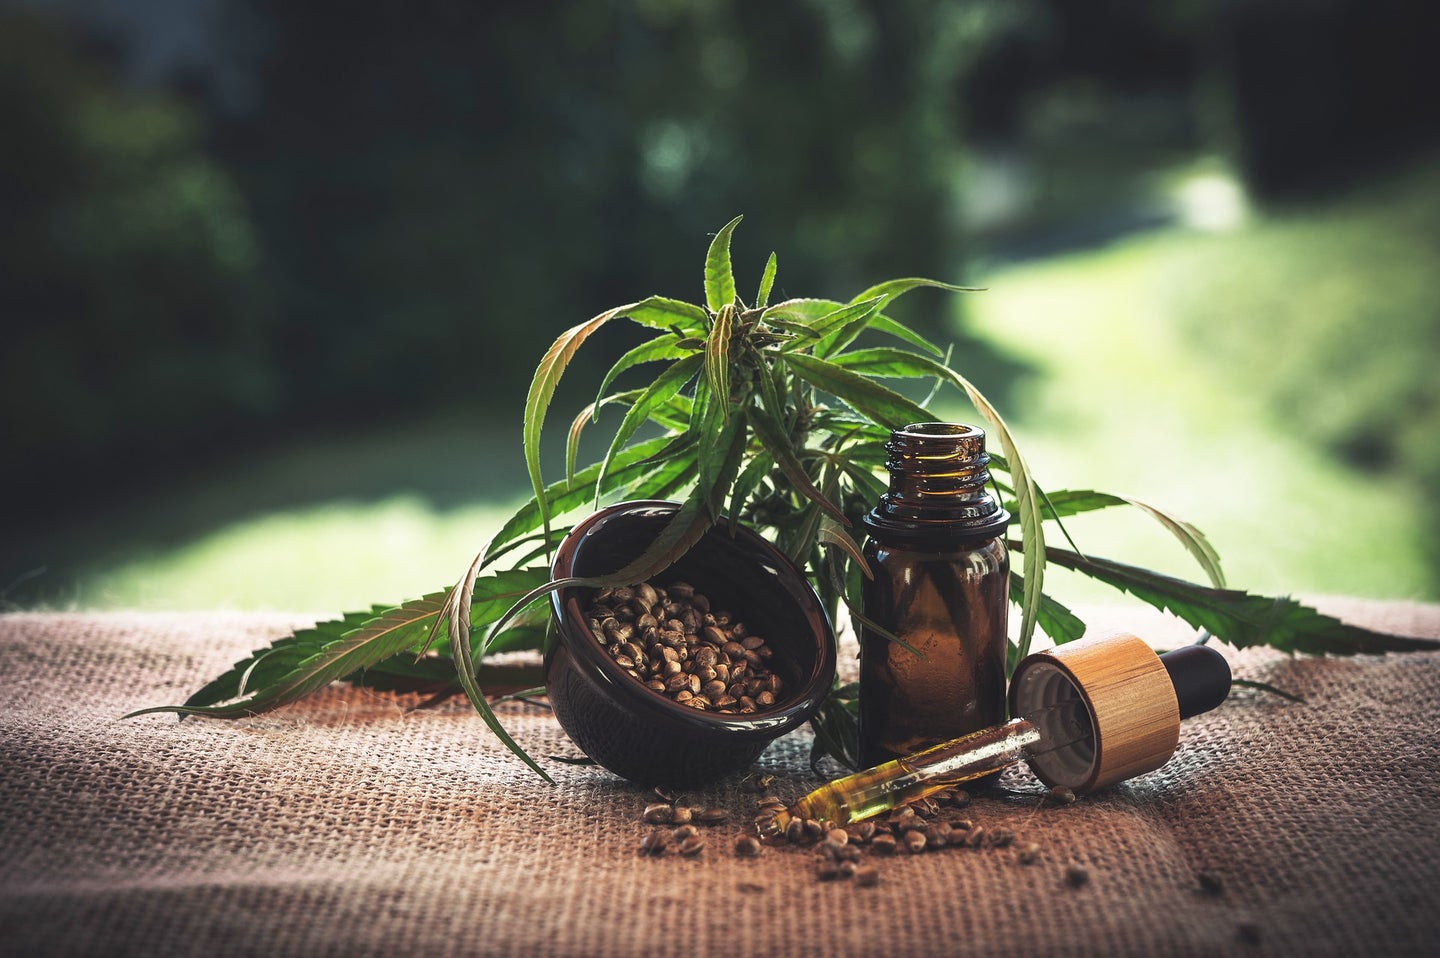 A cannabis plant, ground cannabis, and a vial of green liquid.